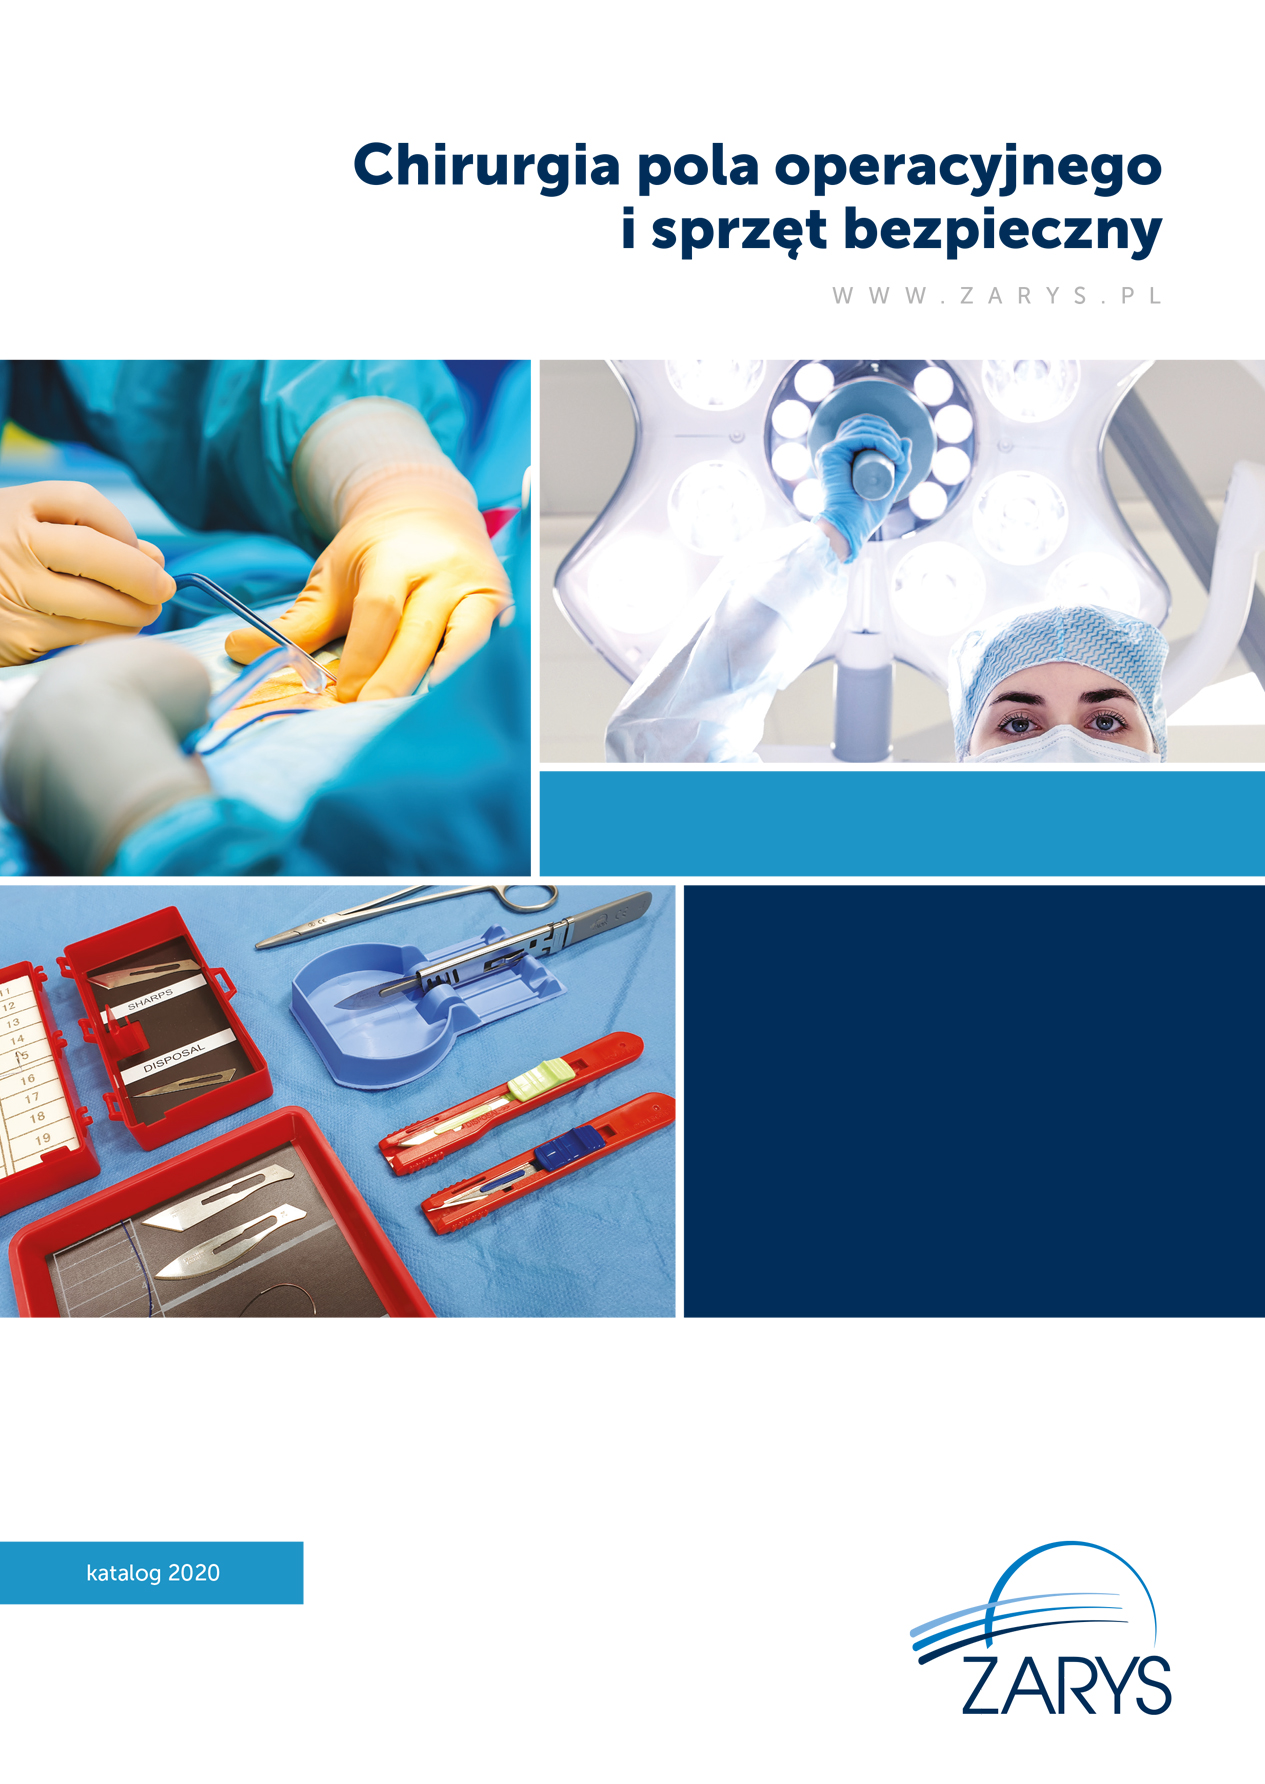 Chirurgia pola operacyjnego i sprzęt bezpieczny